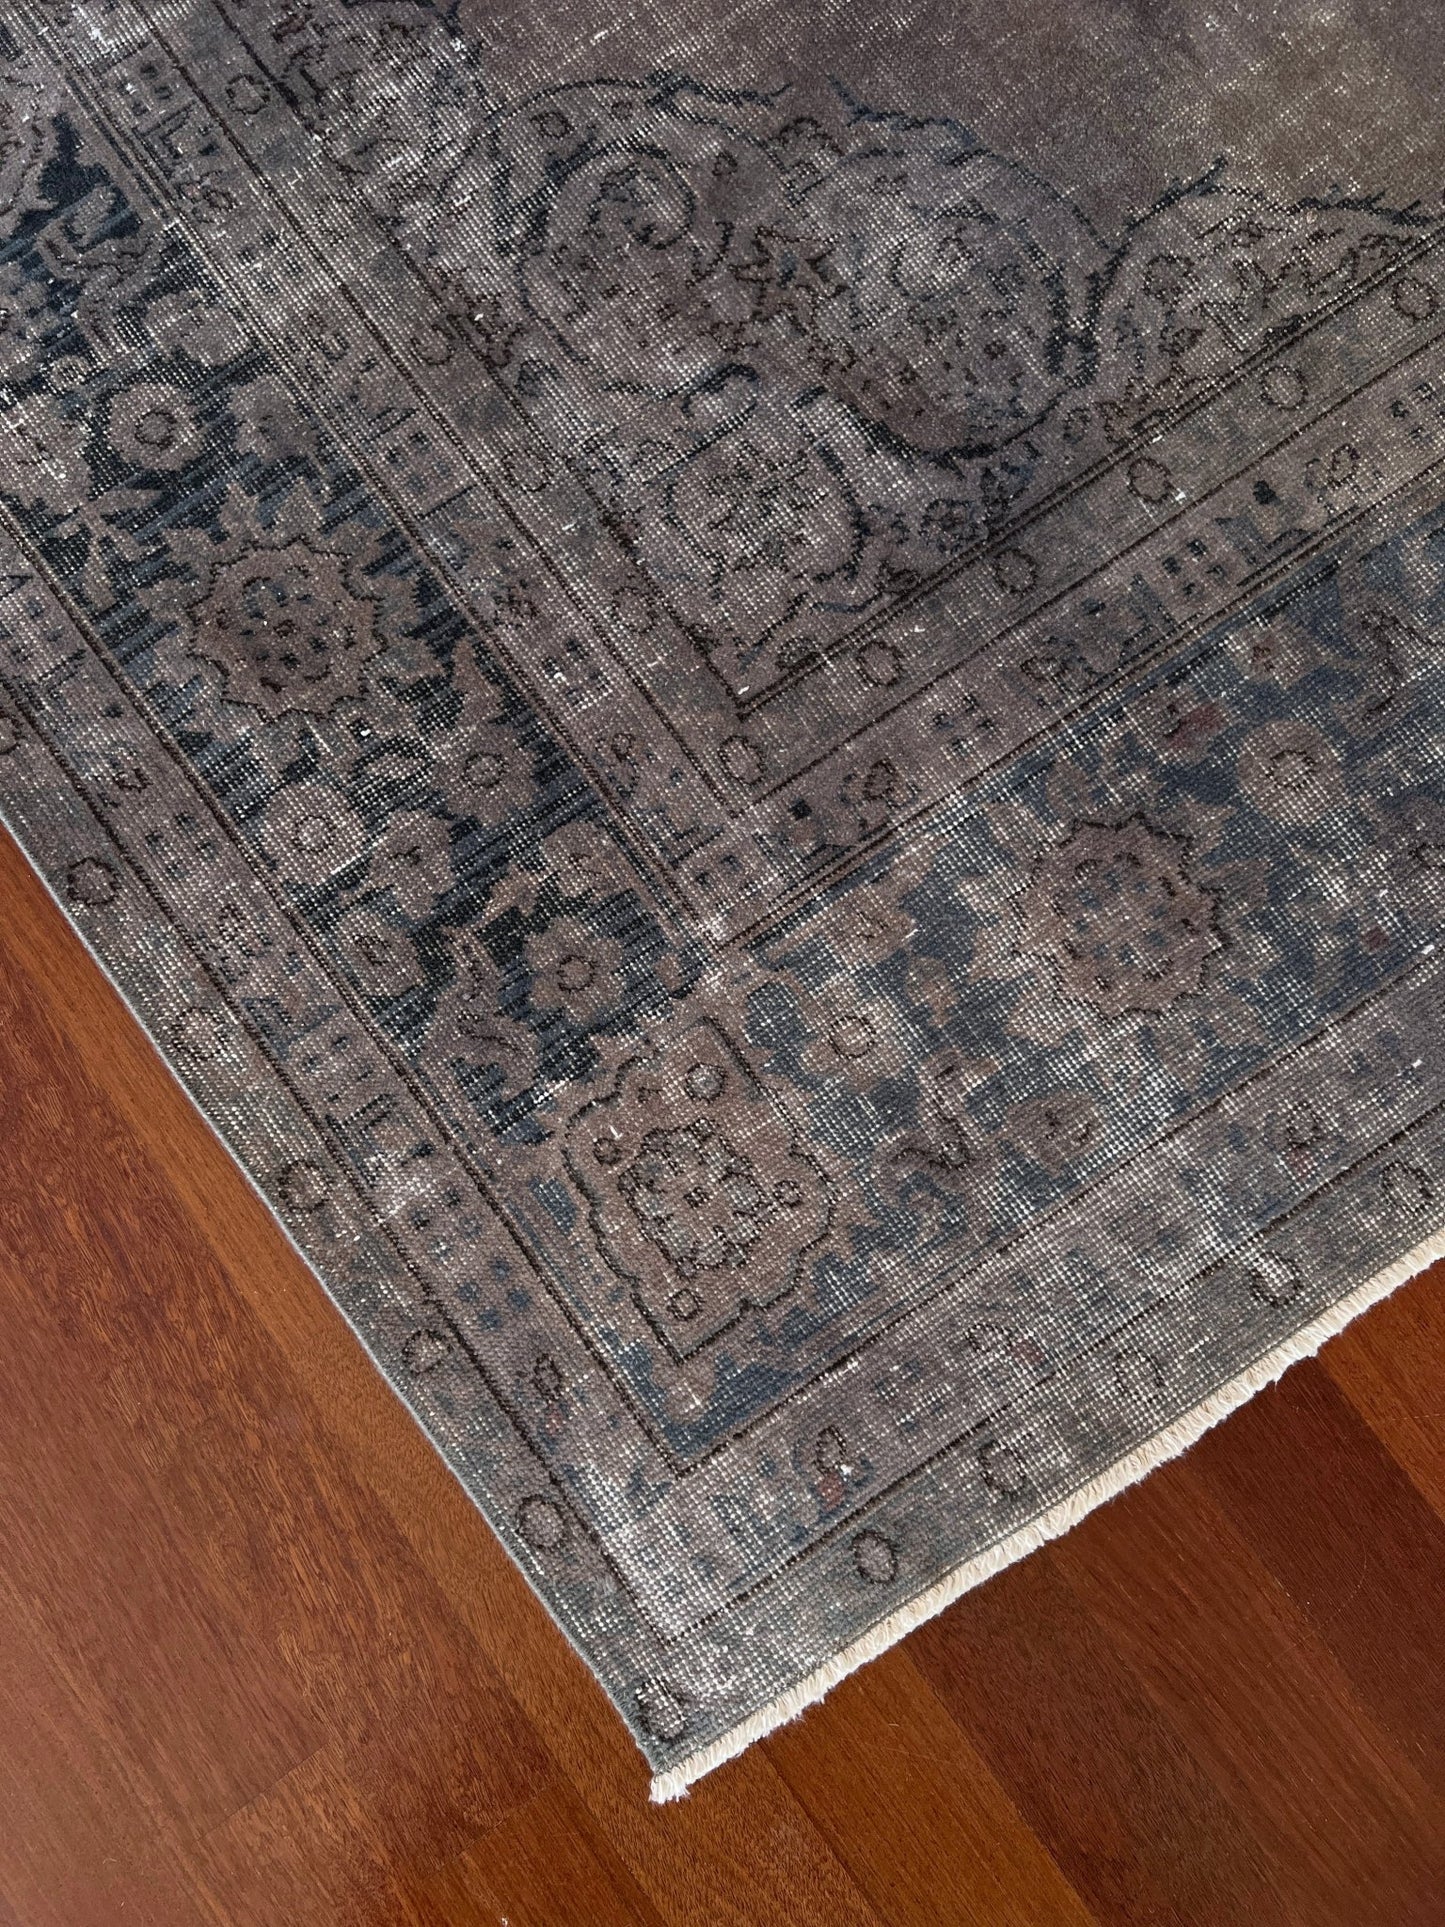 vintage turkish rug. Extra large rug for living room, dining, bedroom, office. oriental rug shop san francisco bay area.